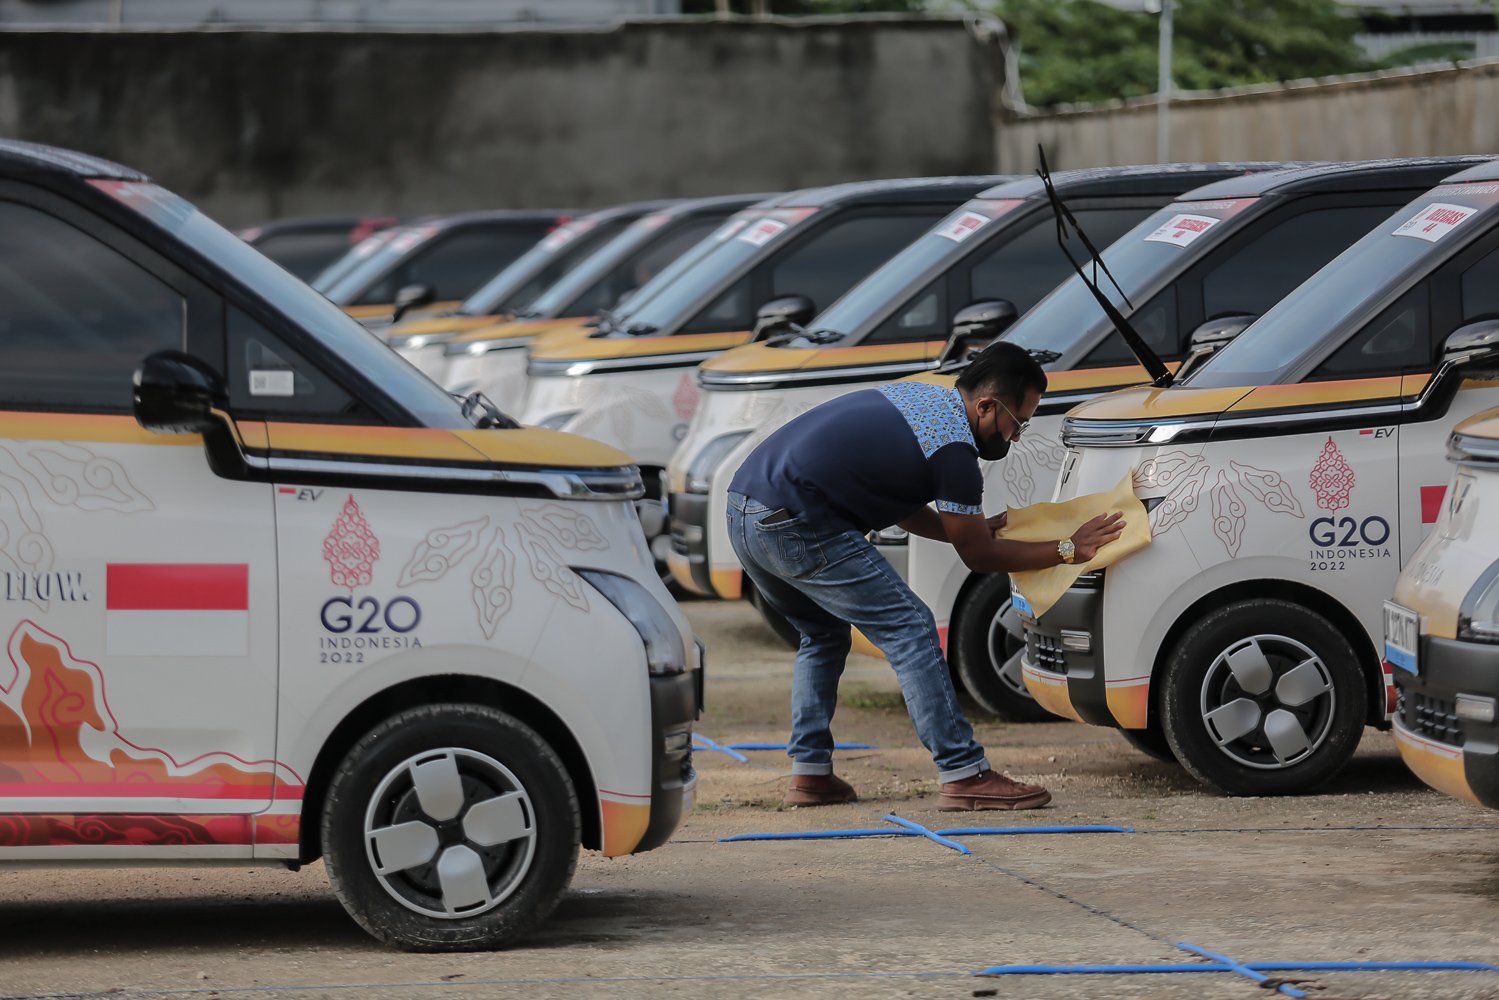 Sebagai mobil resmi penyelenggaraan KTT G20, Wuling Air ev berukuran compact ini bertugas untuk melayani mobilitas para delegasi. Kendaraan ramah lingkungan tersebut memboyong tamu negara dari satu tempat ke destinasi yang dituju.